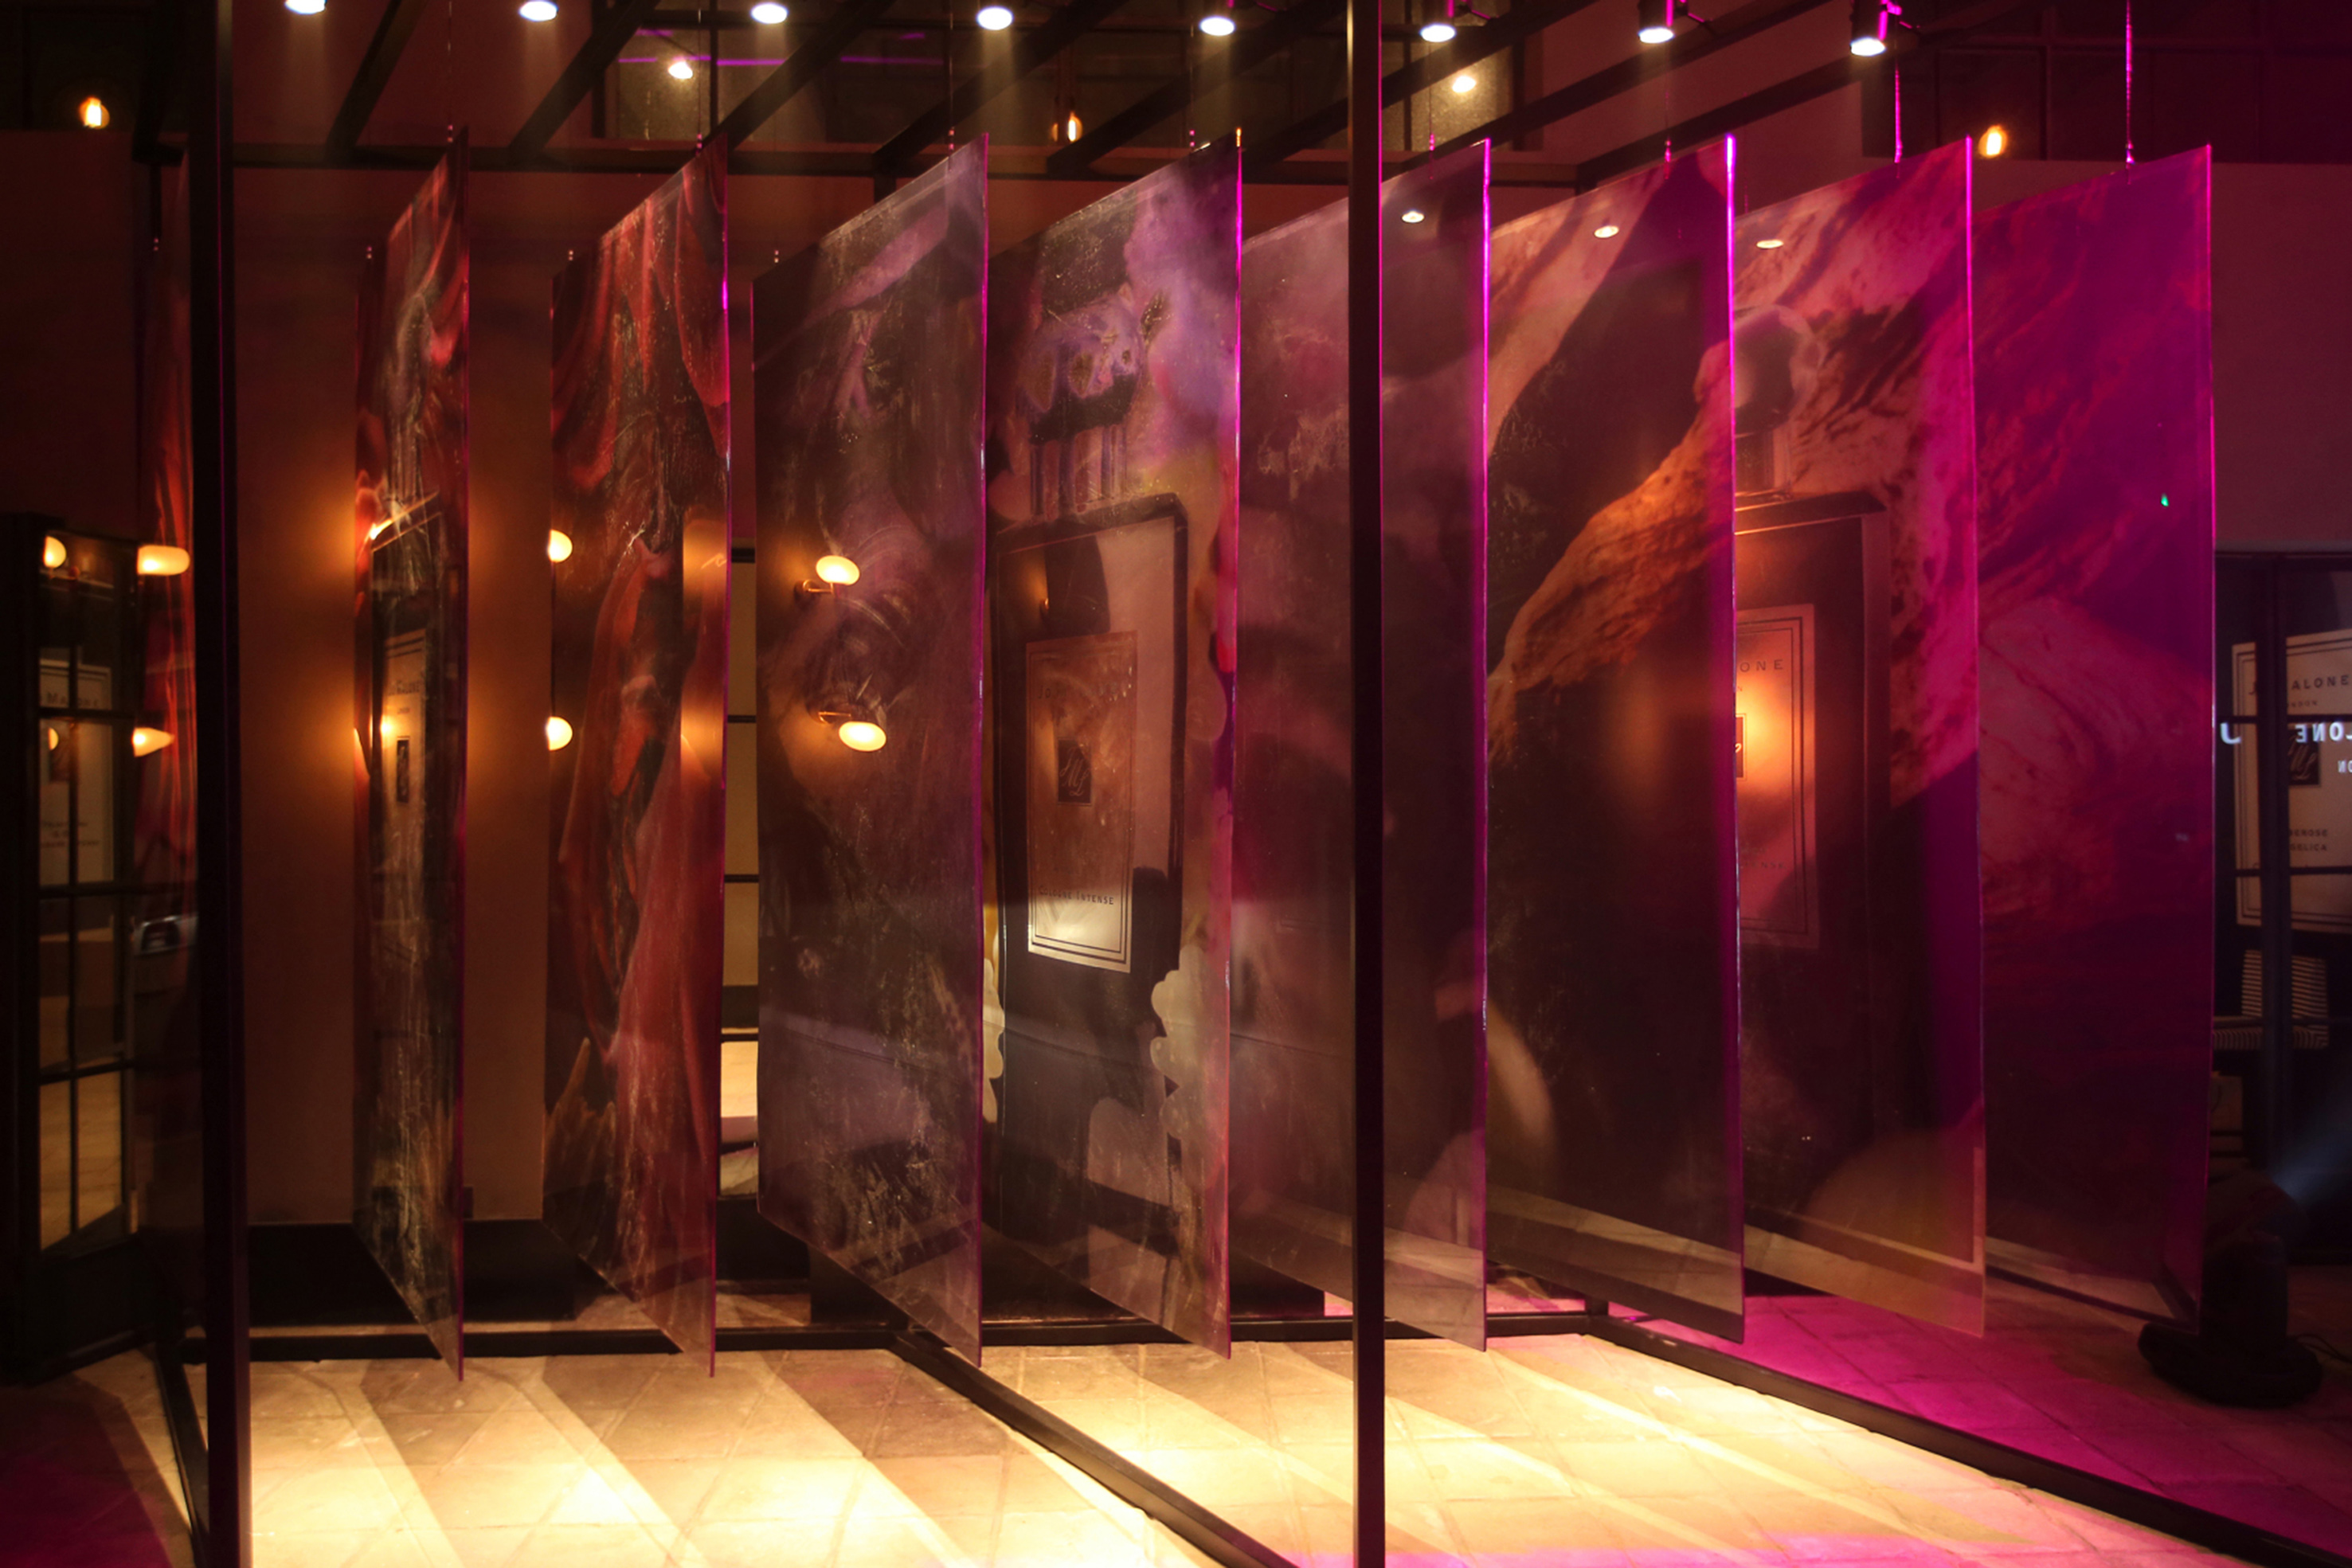 2017年1月18日，雅诗兰黛集团旗下的顶级英伦奢宠香氛品牌Jo Malone London祖·玛珑于北京发布了全新奢华高端系列——Cologne Intense馥郁香氛系列。该系列由品牌创意工作室联手包括Marie Salamagne在内的数位国际著名调香大师打造，精心寻觅和采撷了全球最珍贵且稀有的原料，以结合传统古法和现代工艺的独特调香方式全新演绎，凝萃于极致纯黑配银色标签的瓶身，六款香调皆奢华馥郁、神秘高贵，且带有祖·玛珑摩登英伦格调。活动当天，来自演艺、时尚、美容、艺术及文化体育界的众多明星名流与媒体嘉宾们相聚一堂，和祖·玛珑全球生活创意总监Debbie Wild女士以及祖·玛珑中国区品牌总经理薛俊平女士一同探索全新香氛、润肤乳霜、菁华润肤油及香氛蜡烛；恣意混搭专属香调并尽享奢宠“手部与臂部护理”；以及为犒赏自己或礼赠挚爱而在香氛上镌刻专属印记并置于精致手绘丝绒玫瑰礼盒……在美景和香气中开启了一场馥郁芬芳的循香之旅。